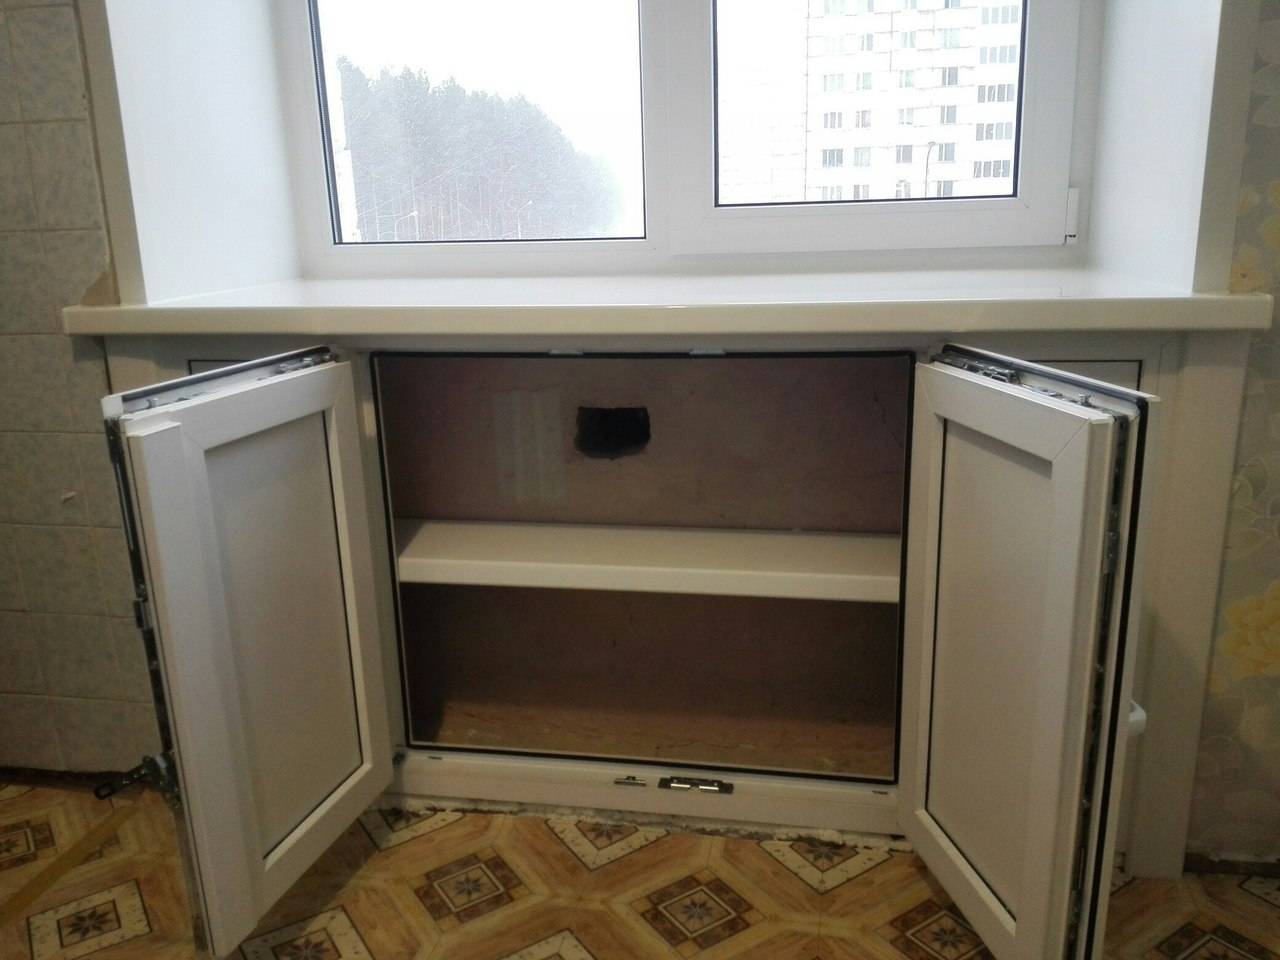 Переделка "хрущевского холодильника" своими руками: ремонт, утепление, эксплуатация